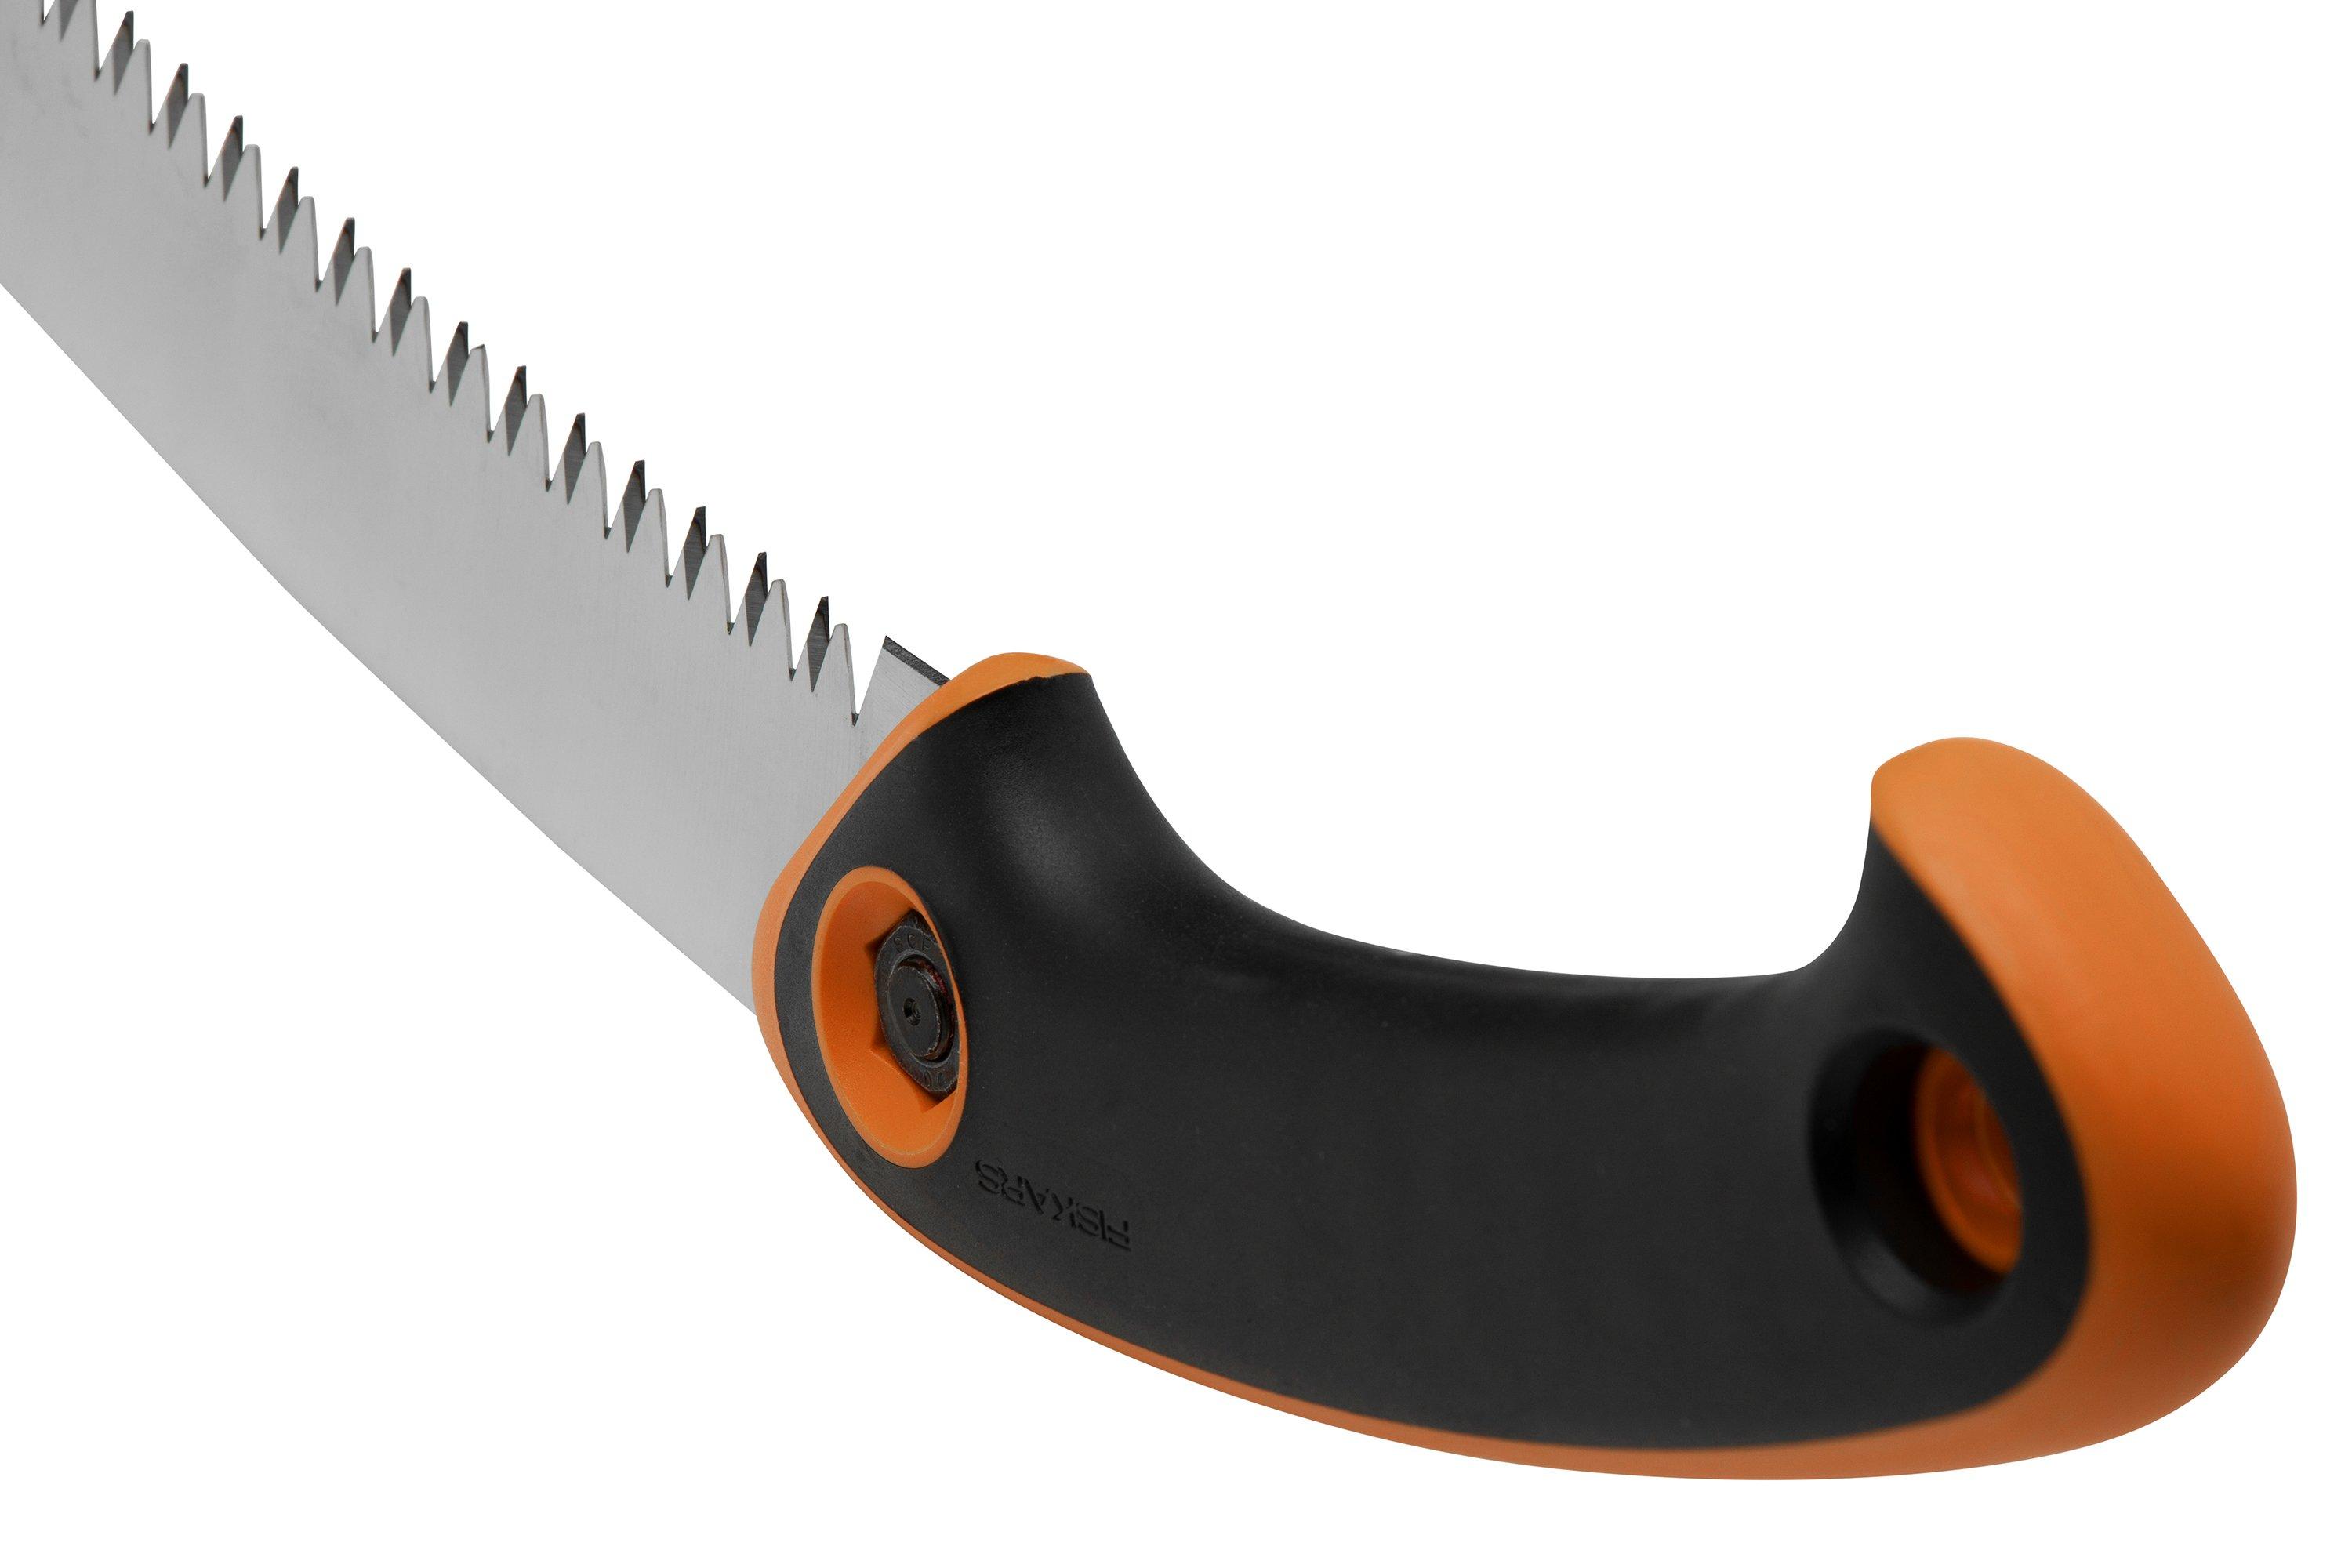 Fiskars Pro Mini Folding Utility Knife REVIEW 